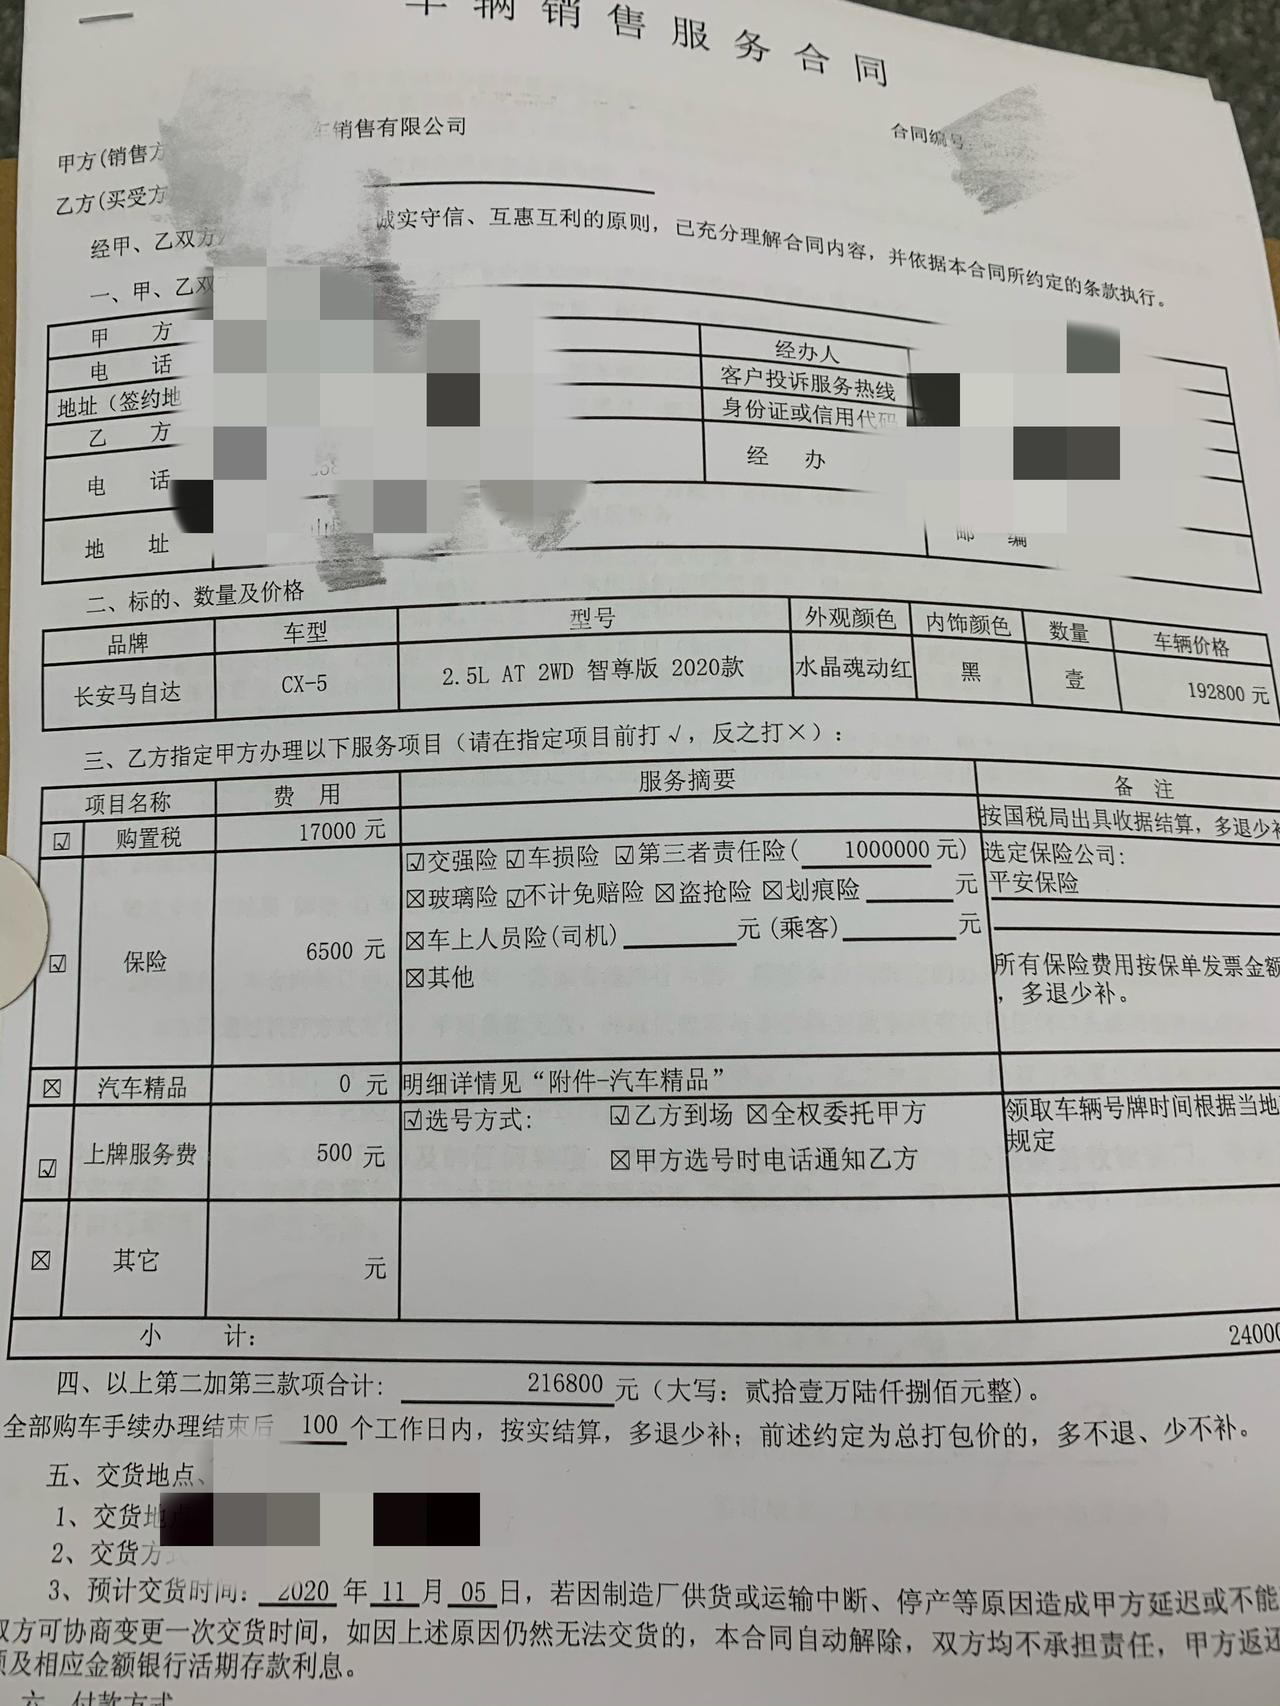 马自达CX-5 上海 这个价格怎么样 送3M全车贴膜  脚垫 行走记录仪  三年送五次保养 落地217800  服务费1